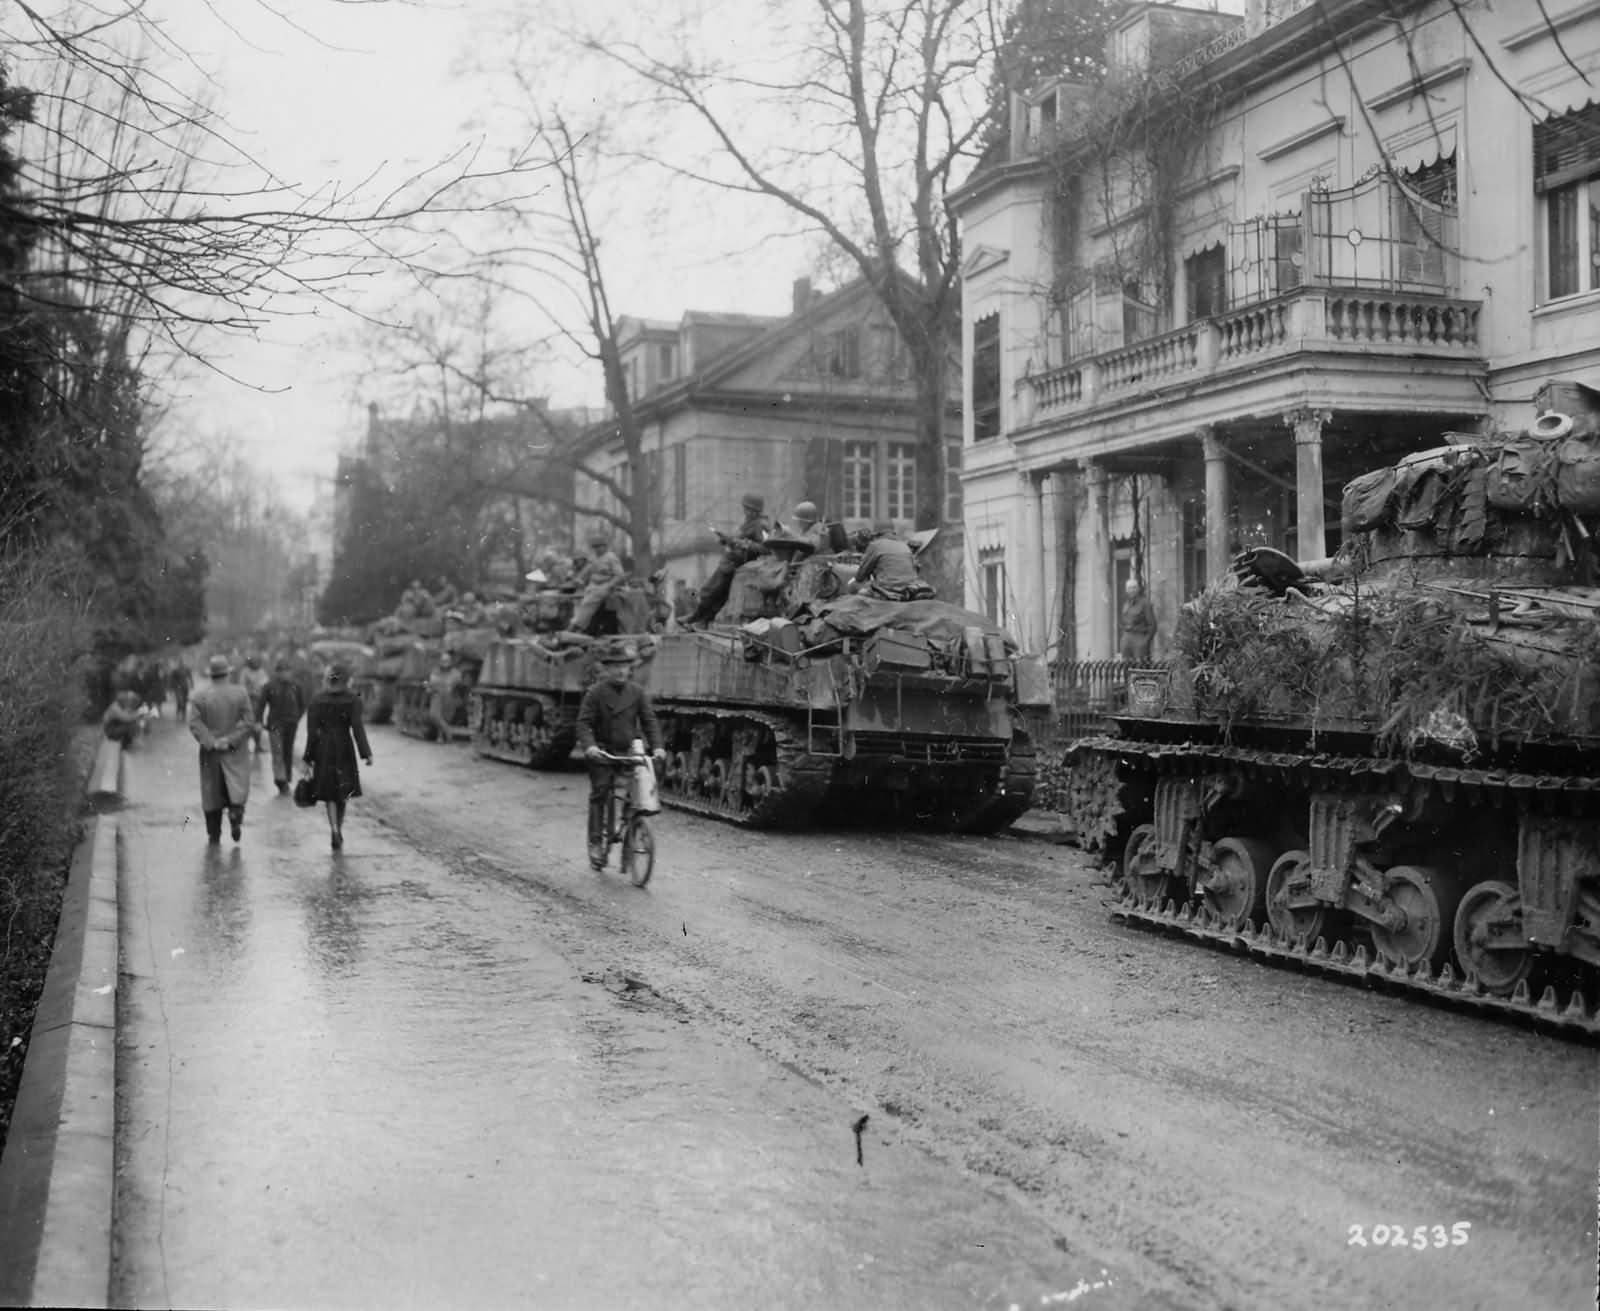 m 4, Sherman, Tank, Weapon, Military, Tanks, Retro Wallpaper